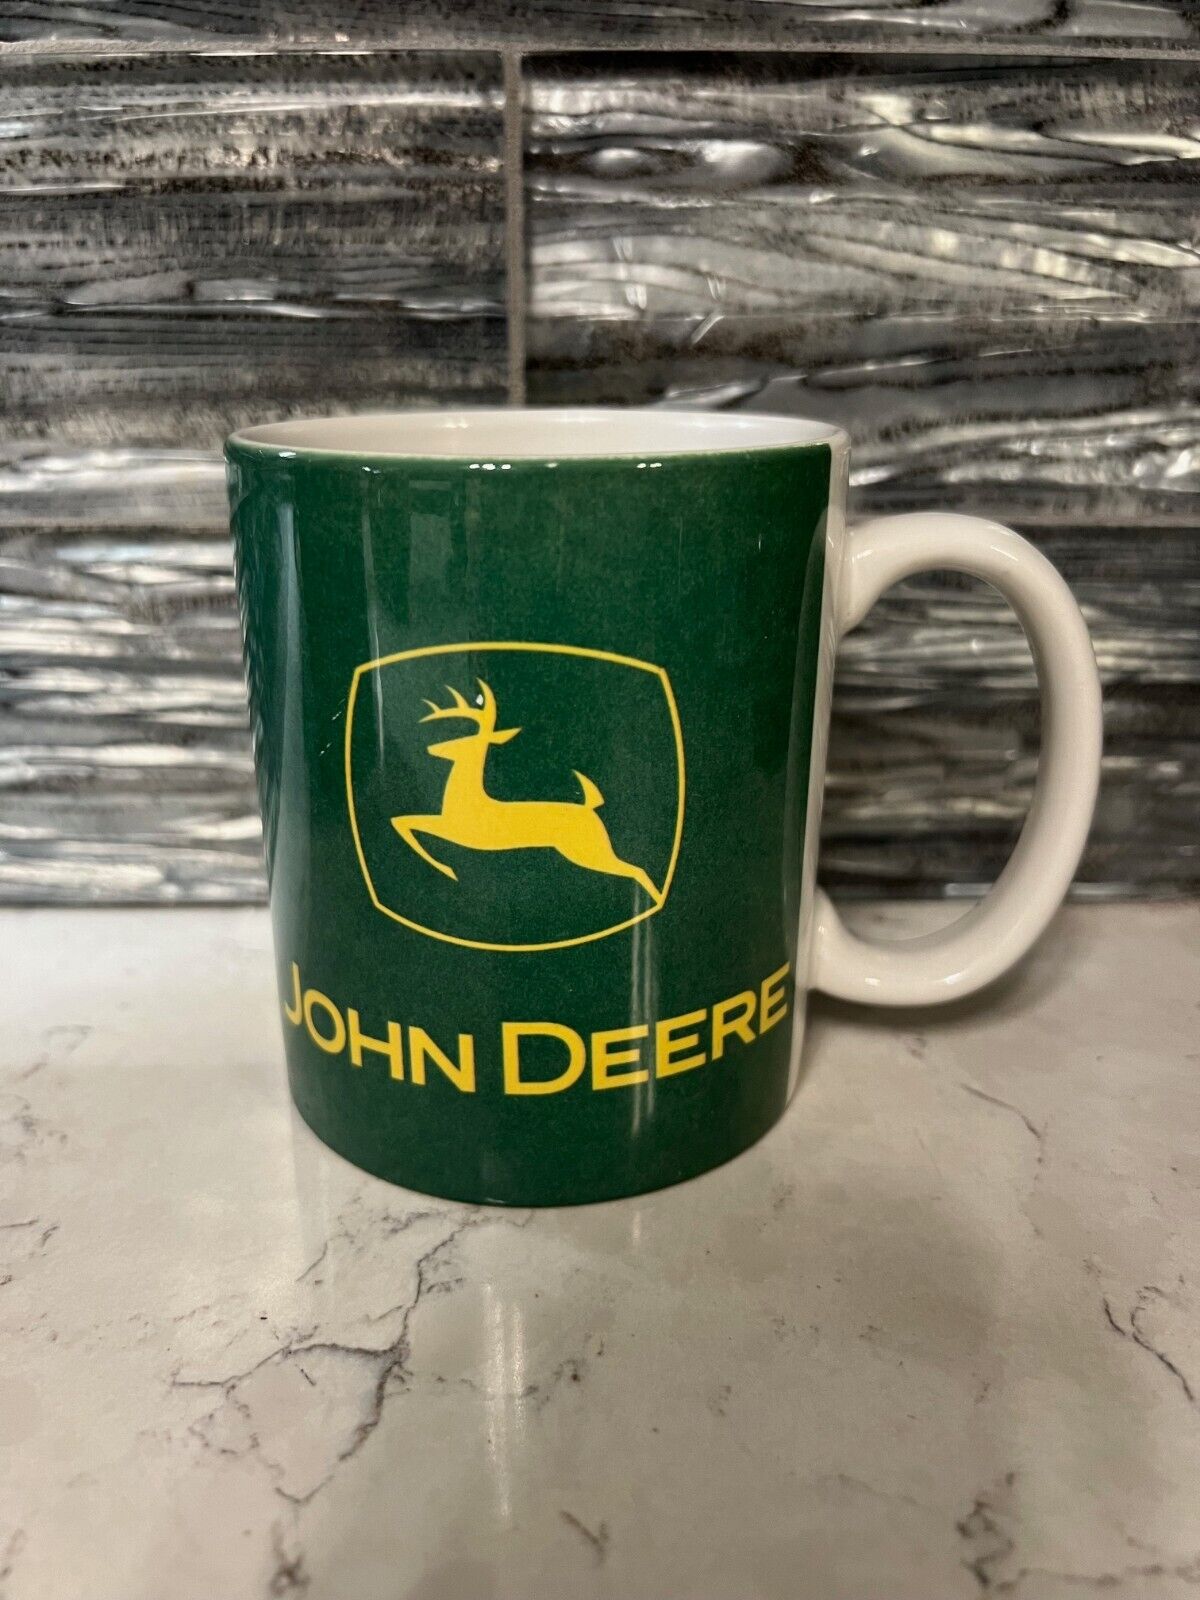 John Deer ceramic coffee mug